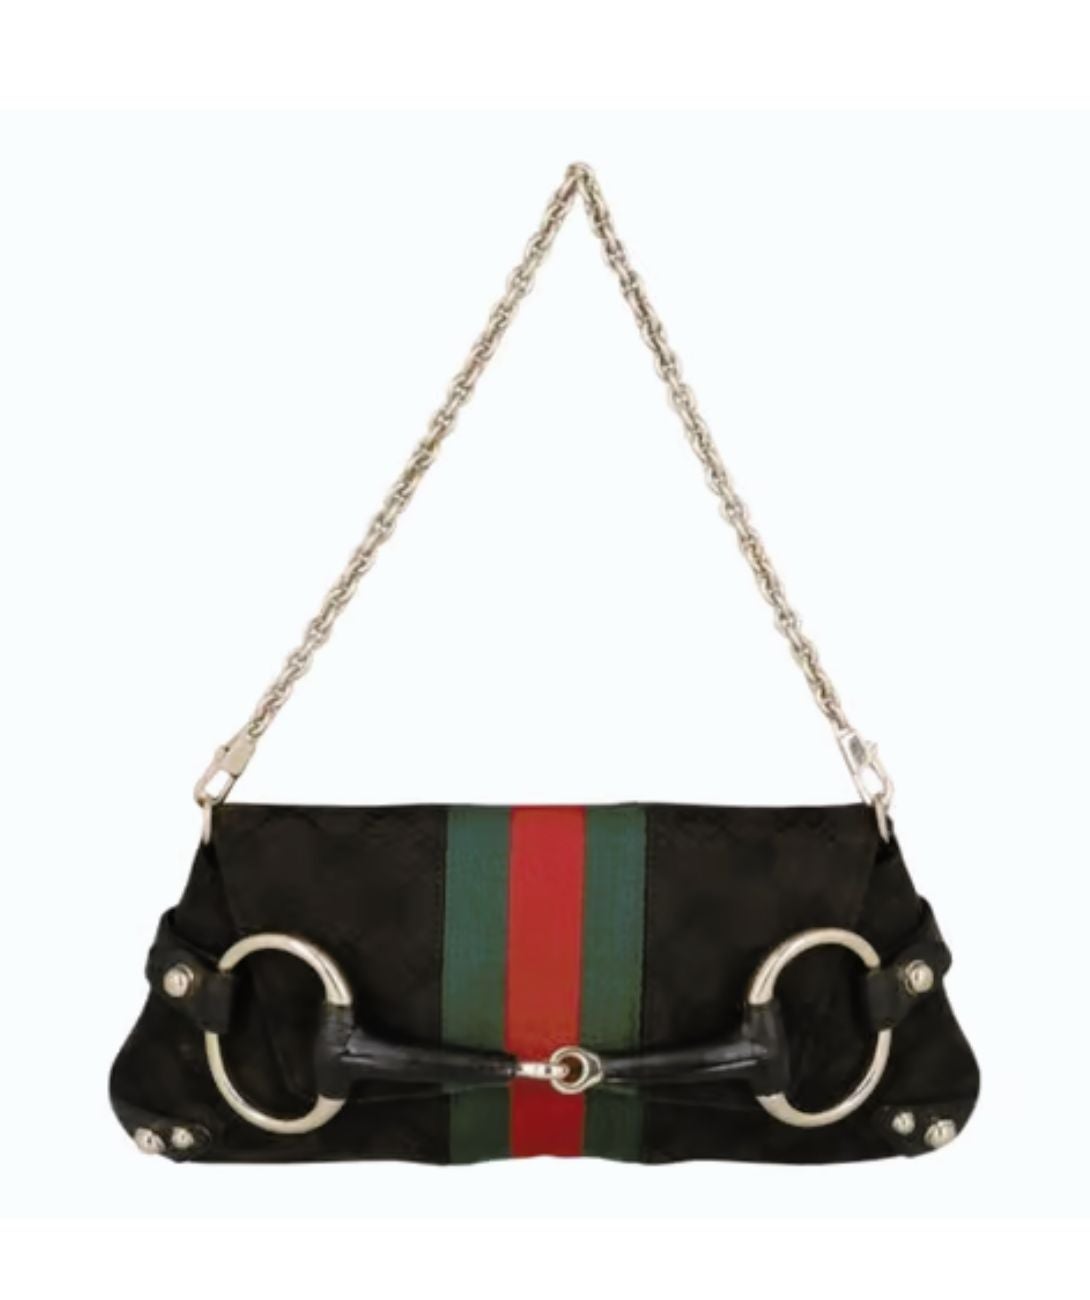 Gucci - The Gucci Horsebit 1955 shoulder bag, a mainstay of the